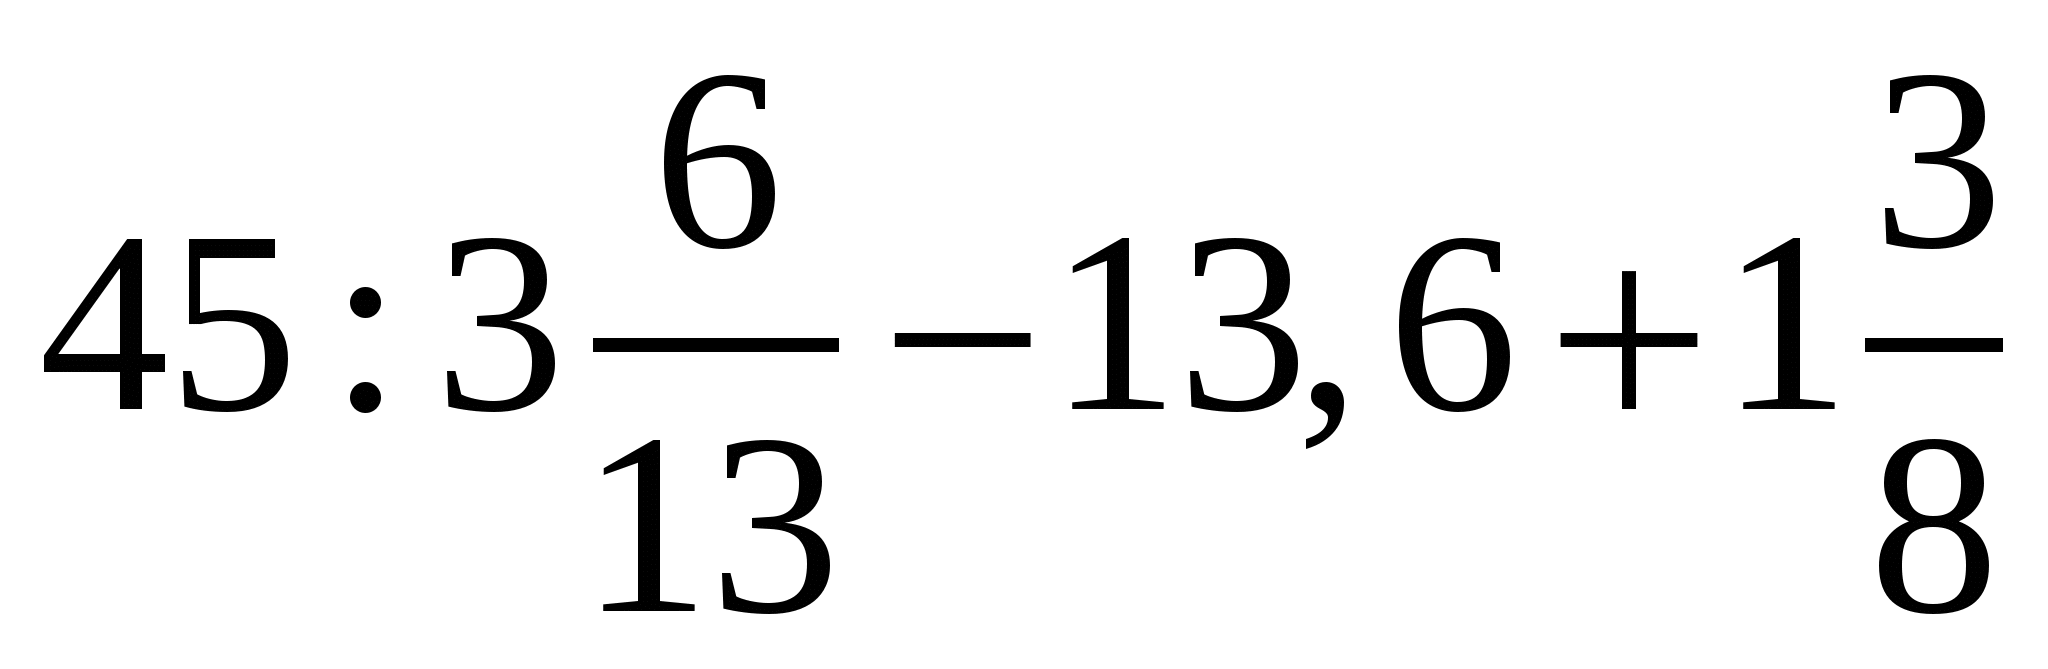 8 9 х 8 1 решение. 2,6х-0,75=0,9х-35,6. 45 3 6/13-13.6+1 3/8 Решение. Уравнение 2.6х-0.75 0.9х-35.6. 2,6х-0, 75=0, 9х-35, 6 ответ.